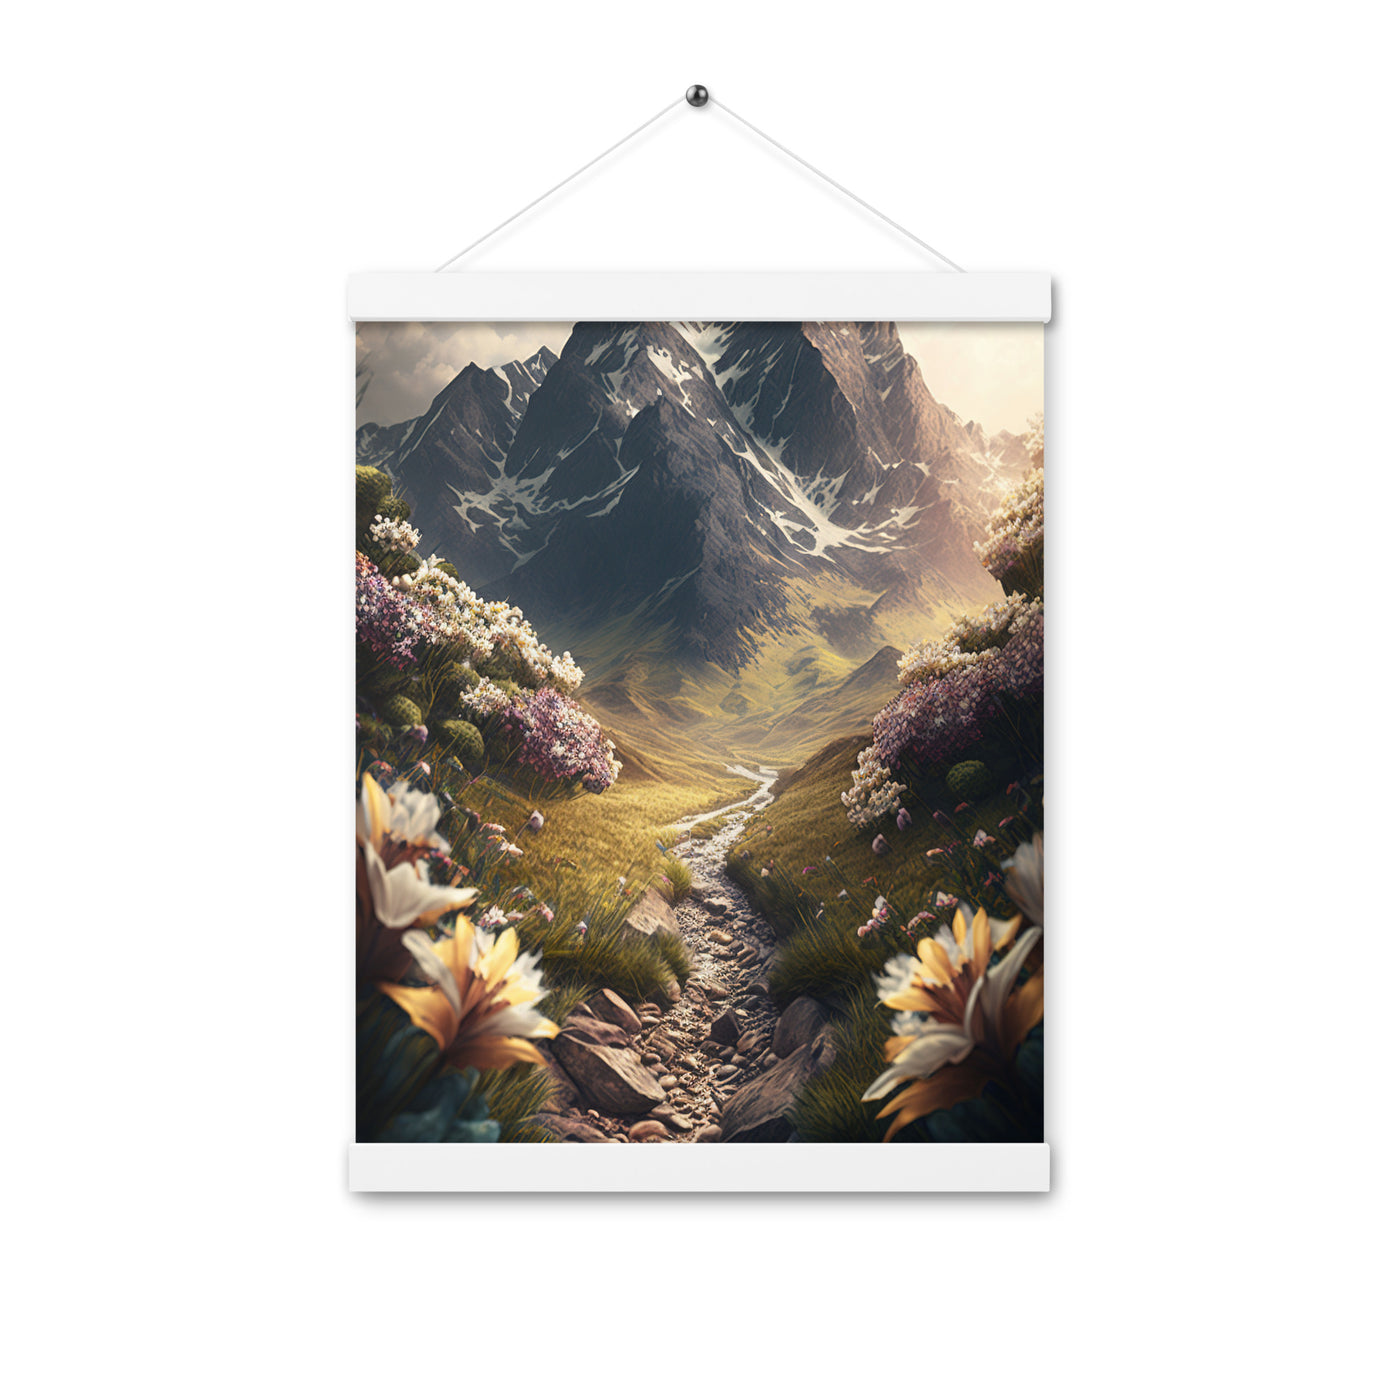 Epischer Berg, steiniger Weg und Blumen - Realistische Malerei - Premium Poster mit Aufhängung berge xxx 30.5 x 40.6 cm